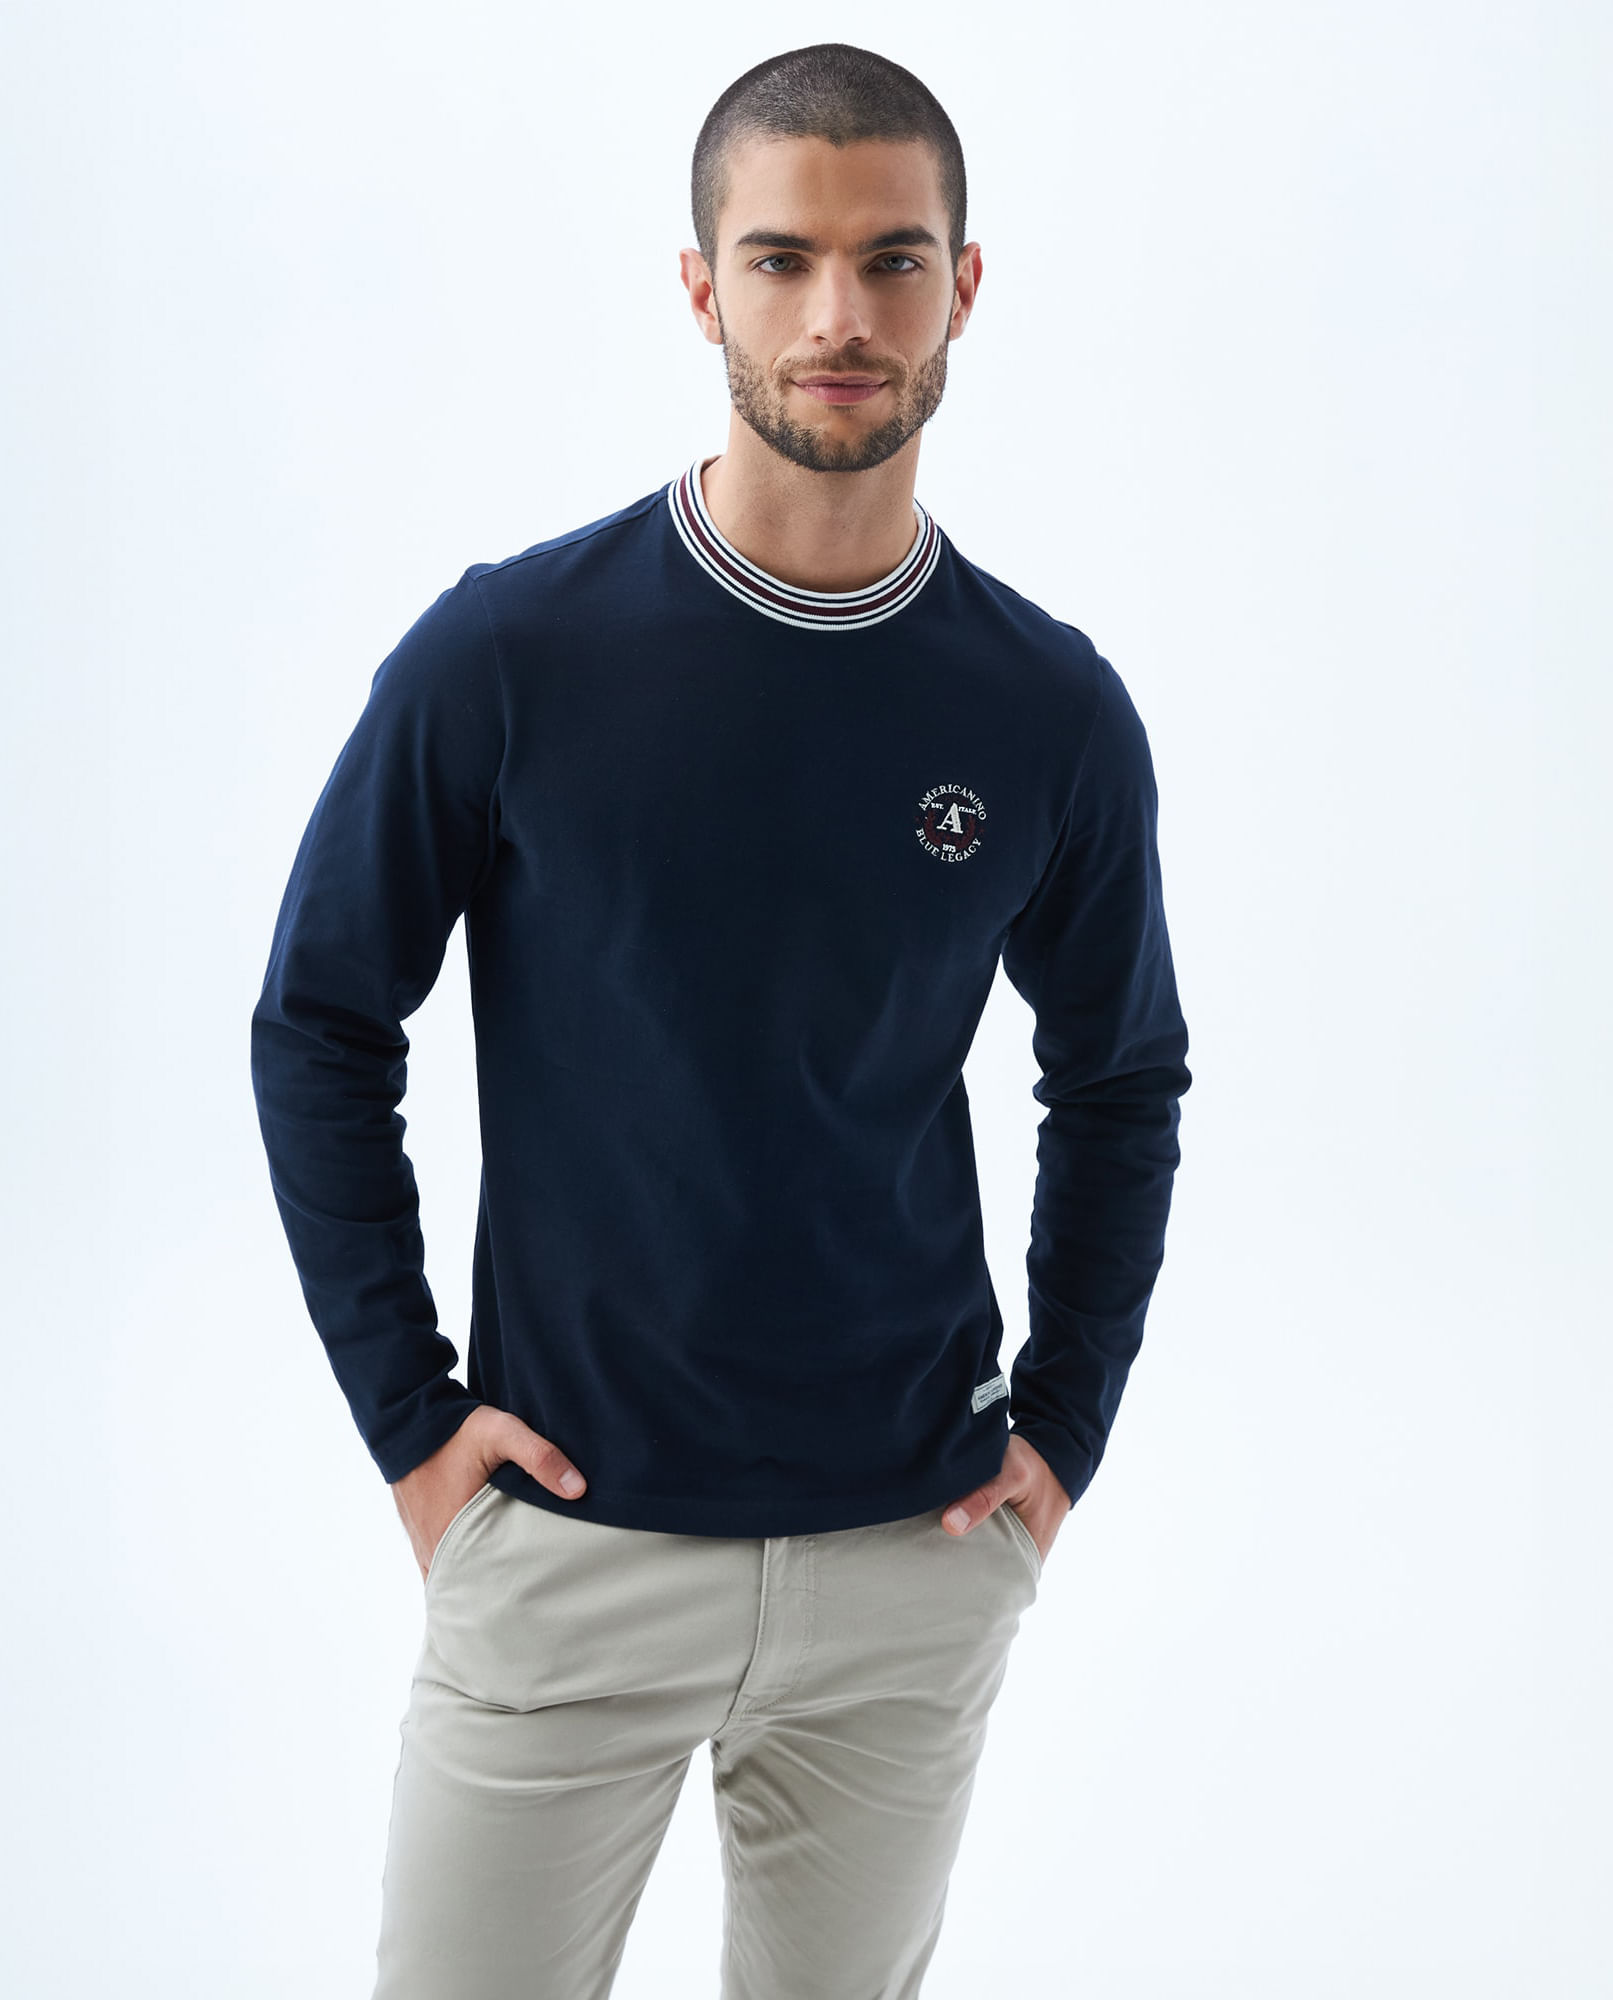 Camiseta Calvin Klein Masculino KM0KM00193-100 XL - Branco - Roma Shopping  - Seu Destino para Compras no Paraguai